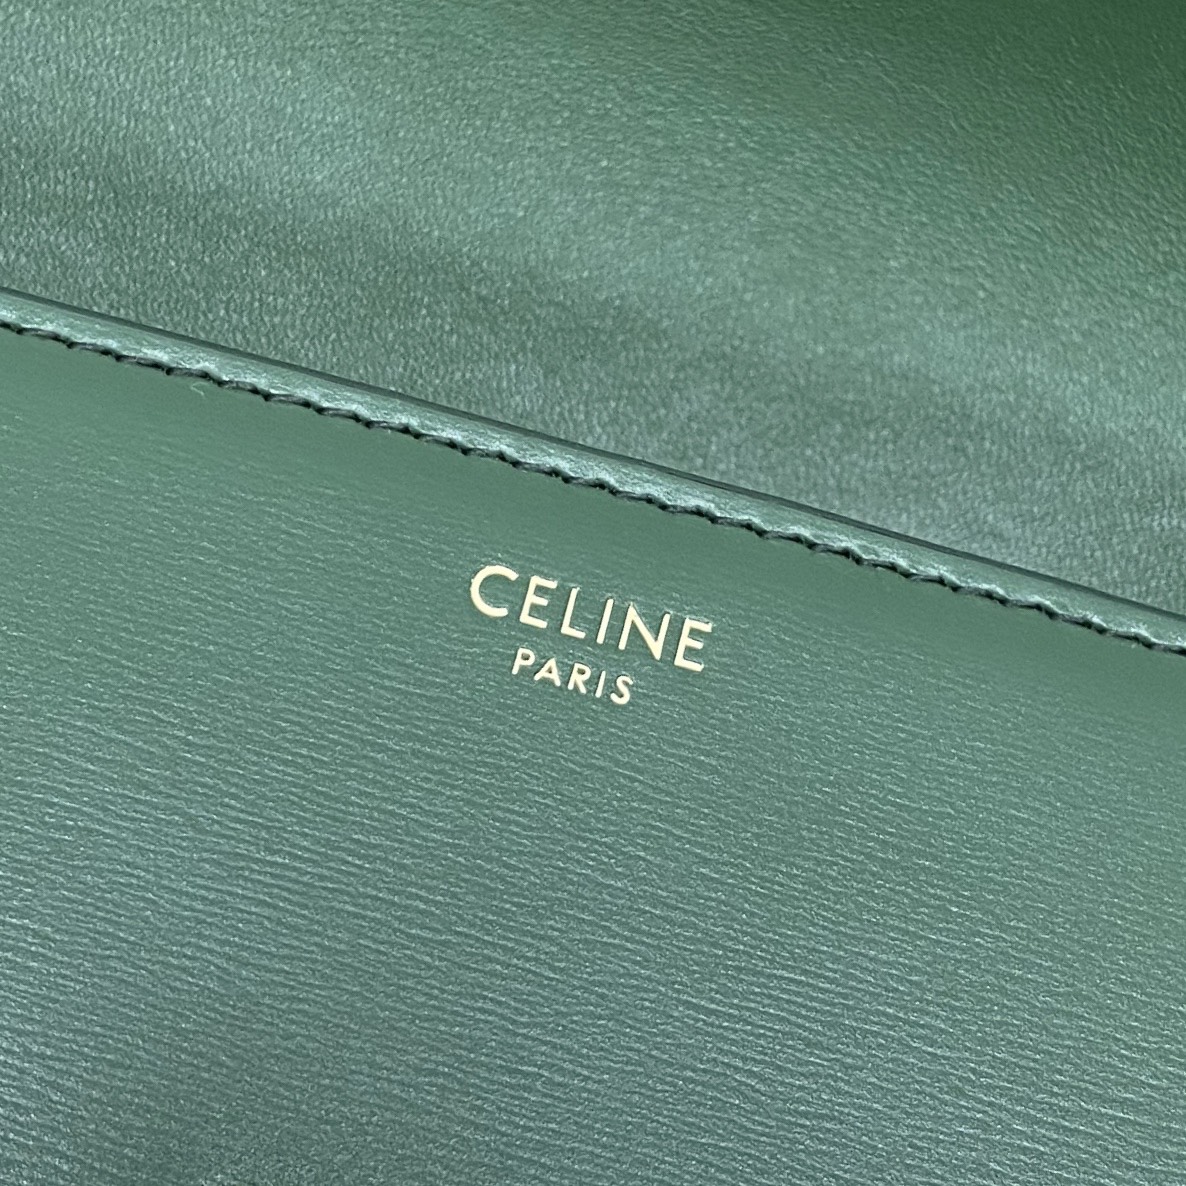 【P1350】思琳包包批发 Celine 2021新款Triomphe凯旋门腋下包 森林绿